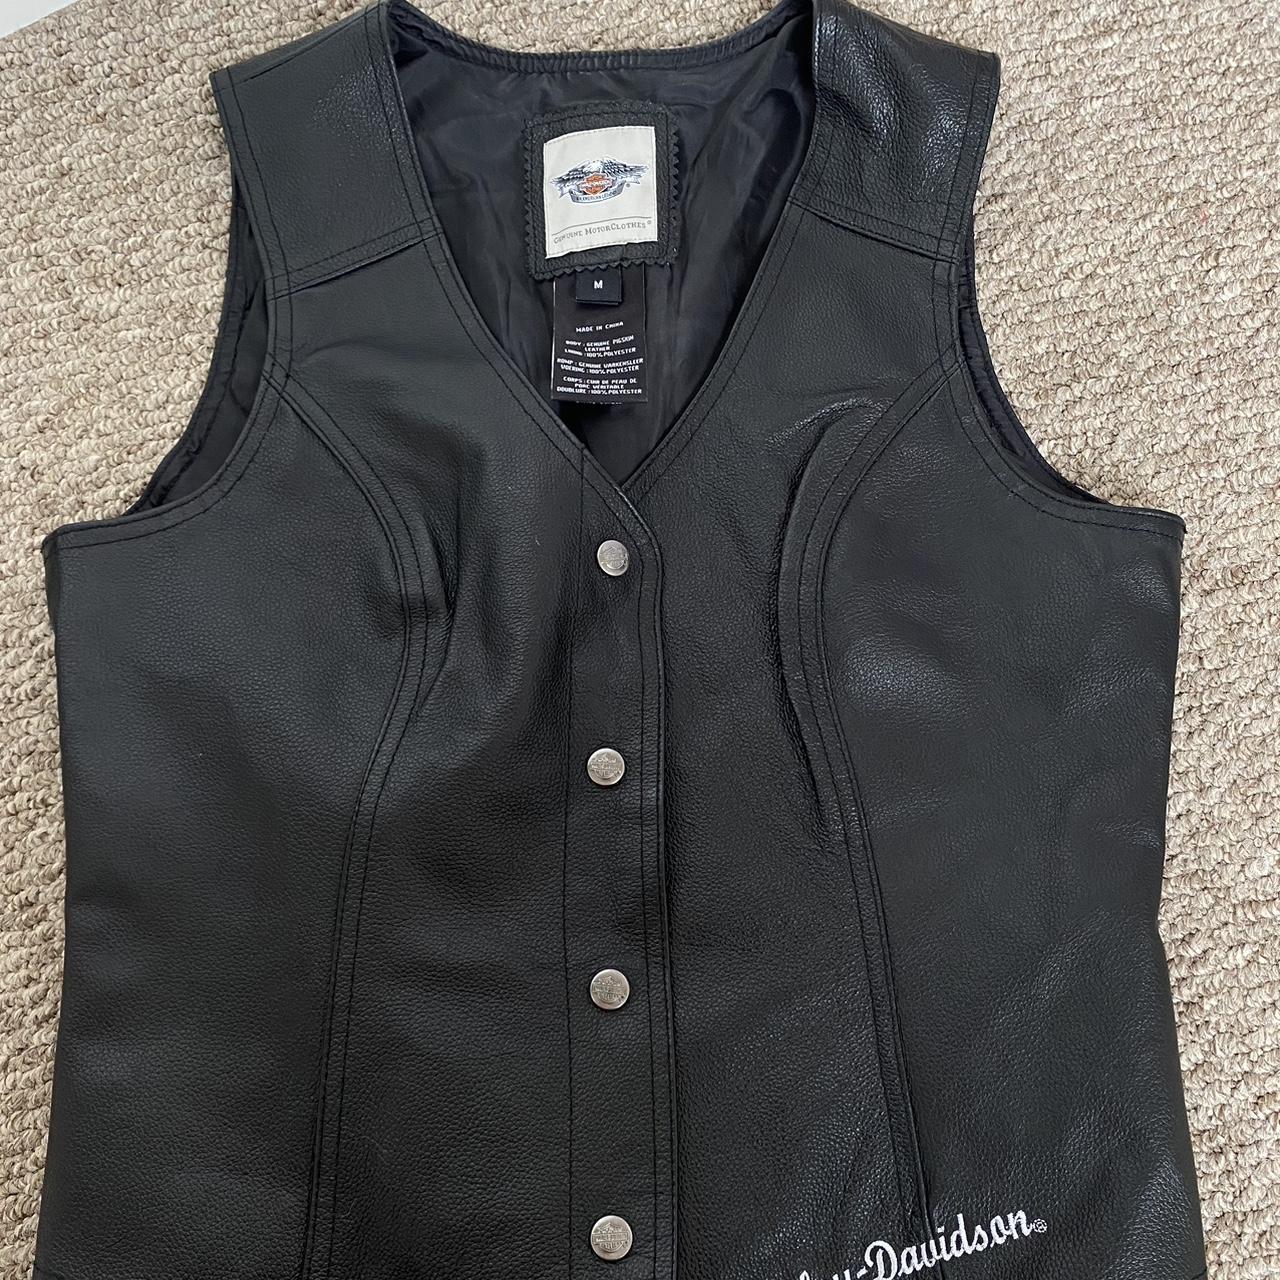 🔥Harley Davidson Vest🔥 Genuine leather vest in... - Depop